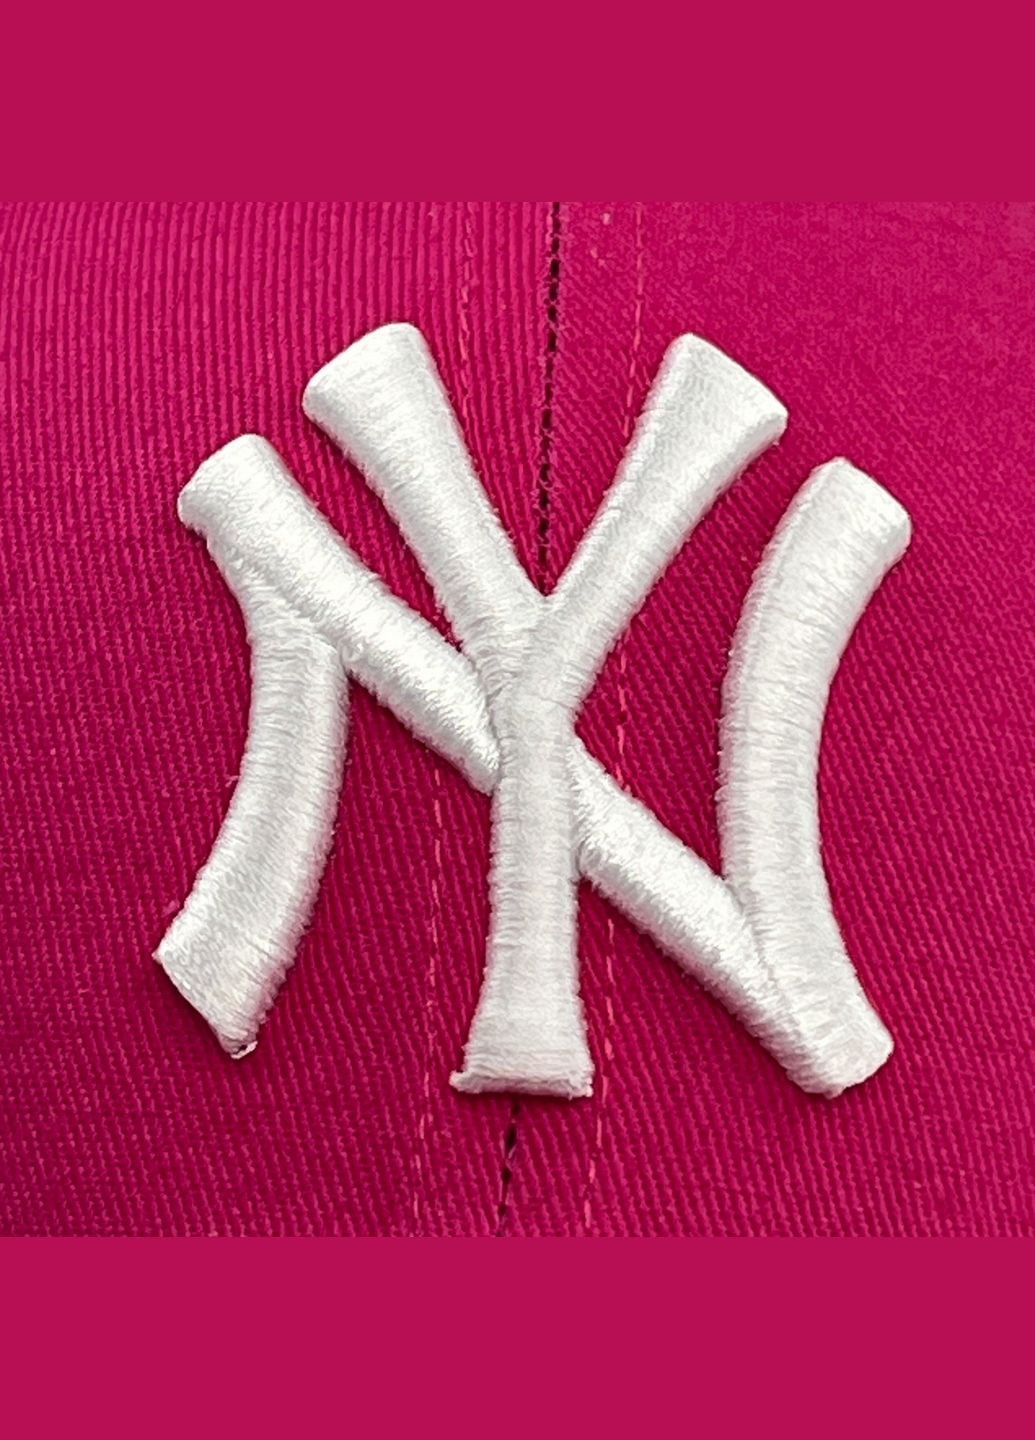 Бейсболка с регулятором женская хлопок розовая BENNY LuckyLOOK 175-440 (279553240)